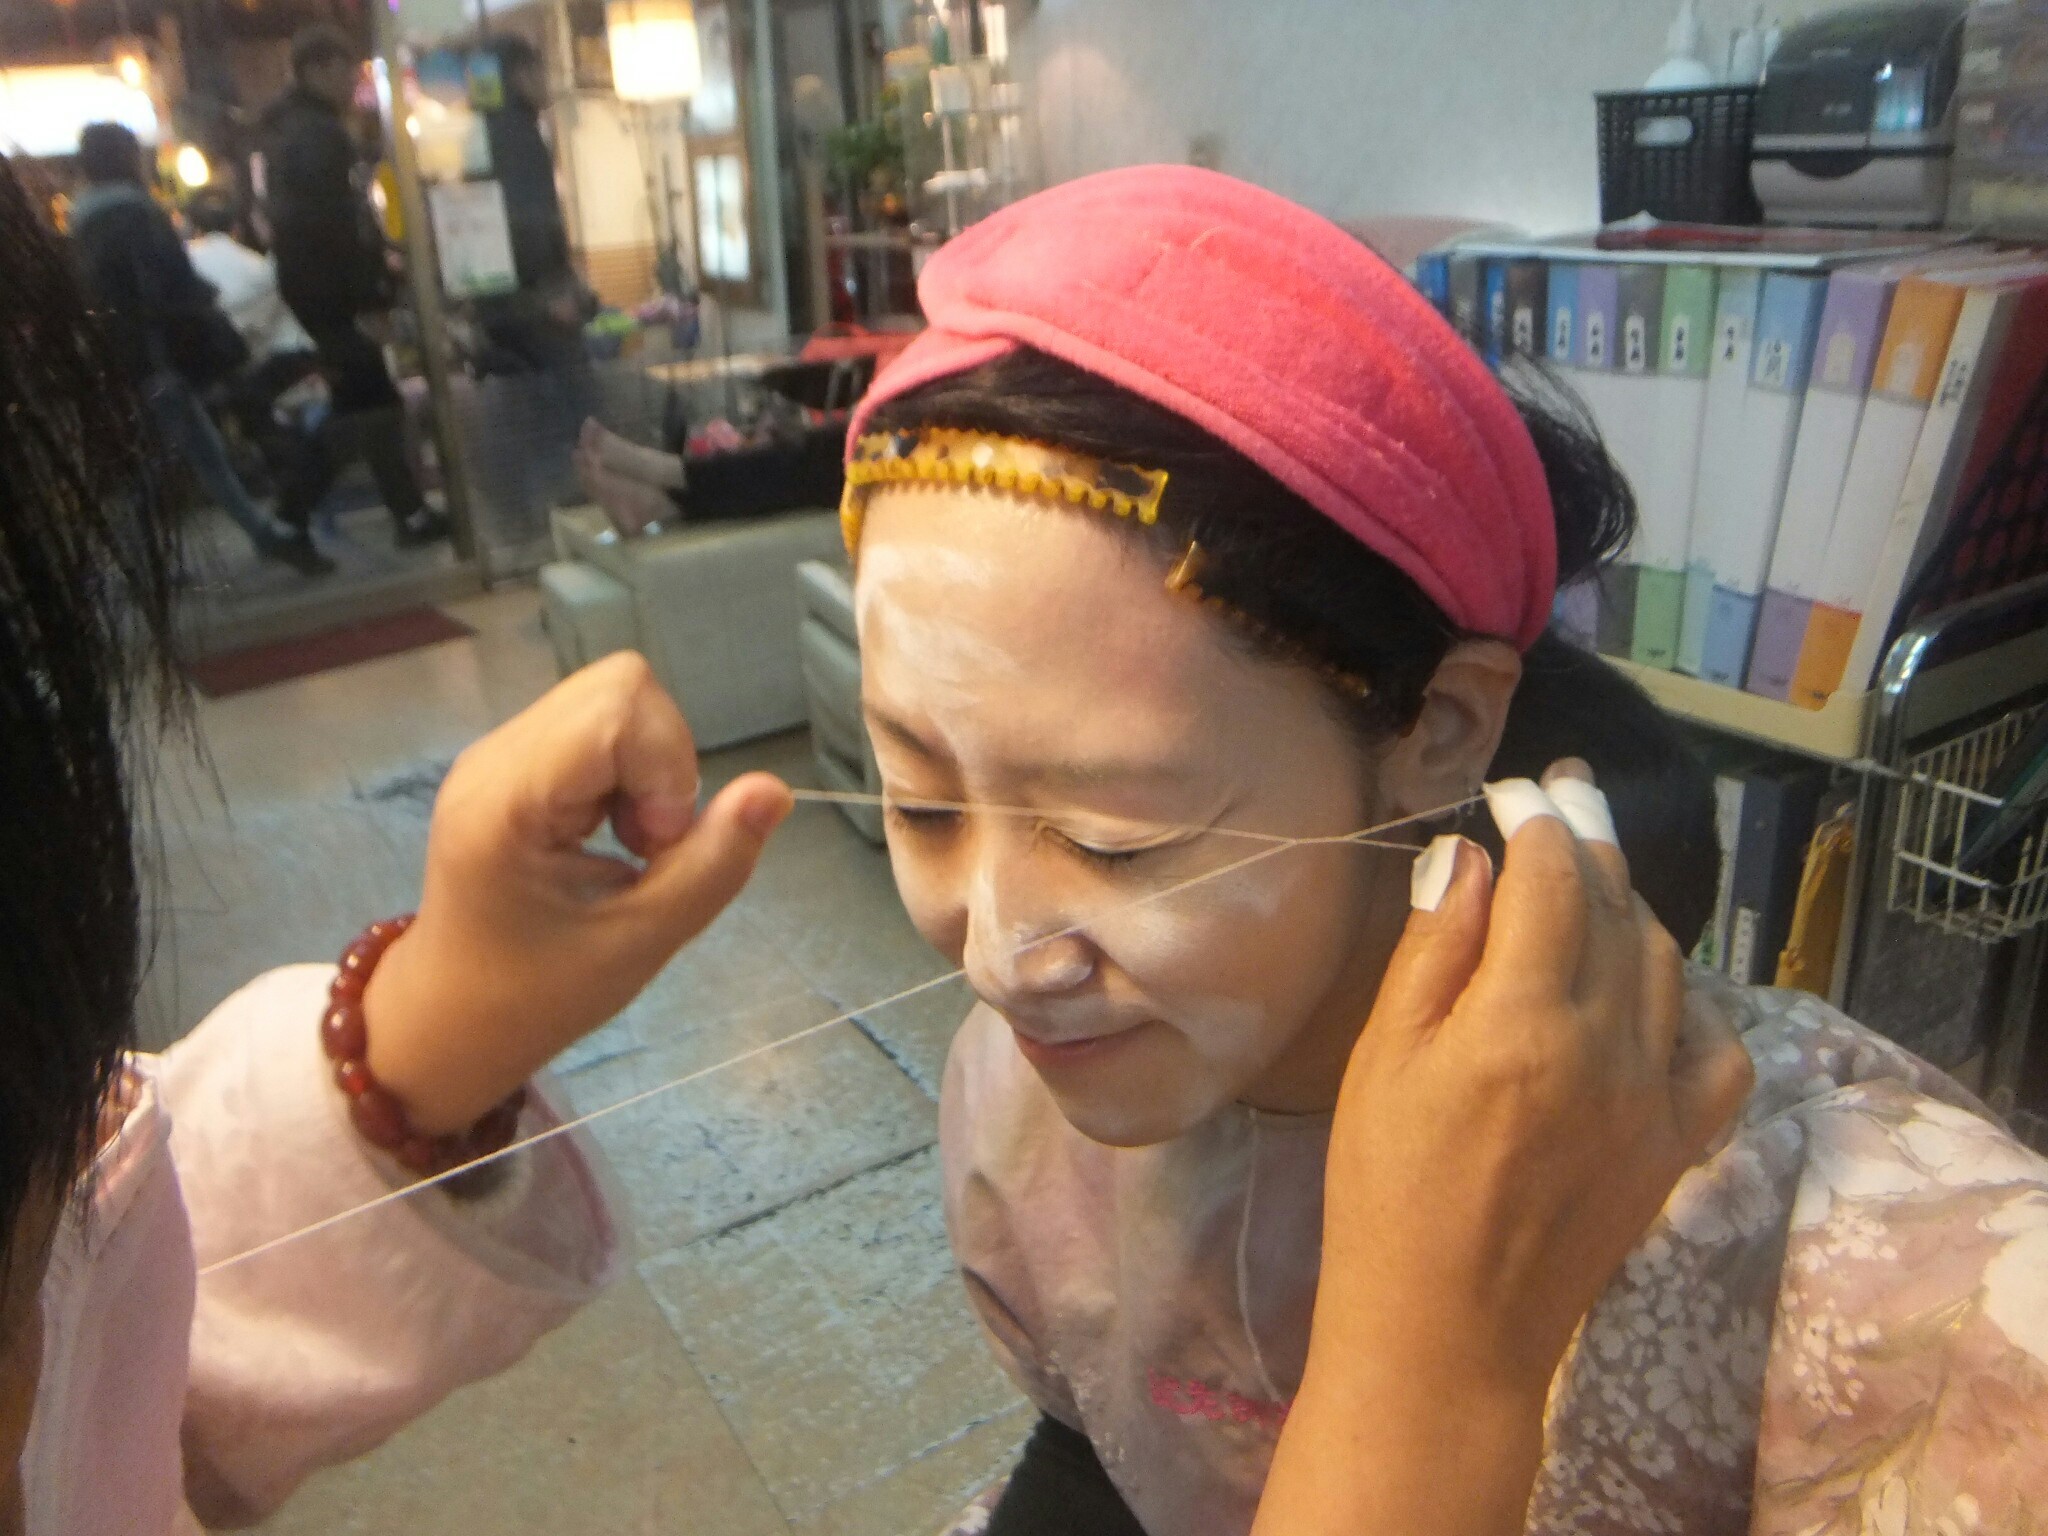 痛いけど効果あり 産毛を糸で除去する台湾の美容法 挽臉 ワンリェン を人気店で試す Trip S トリップス